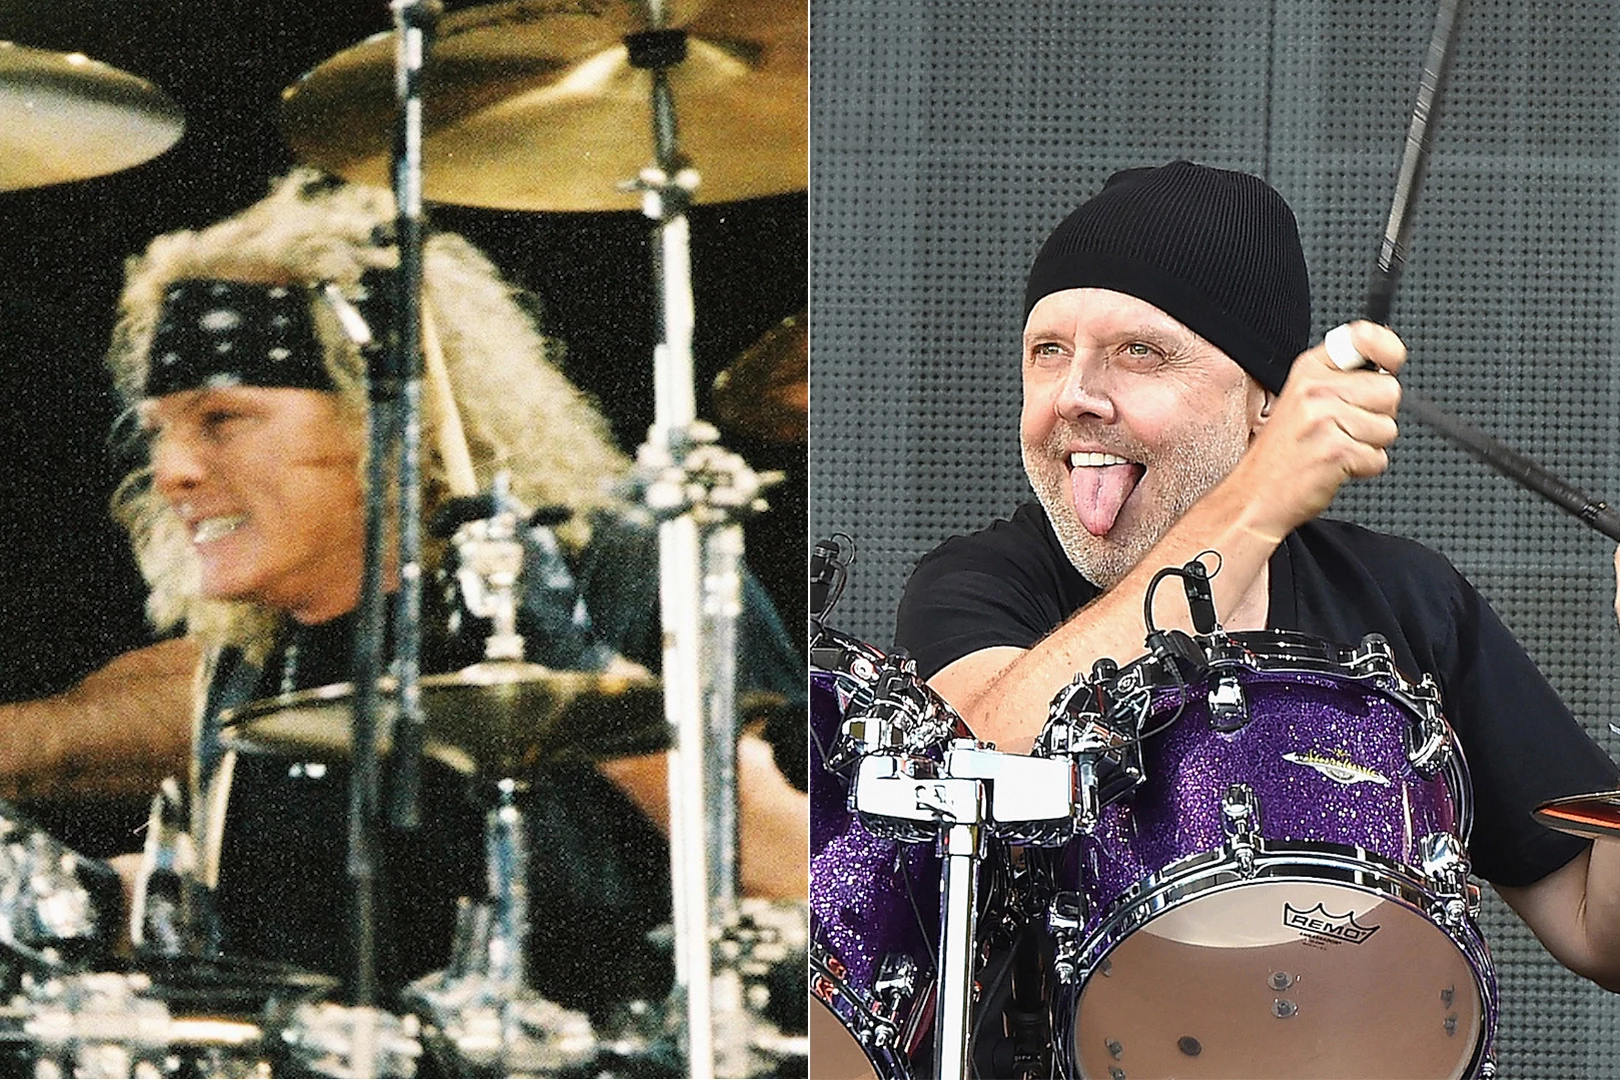 Matt Sorum Reveals How Lars Ulrich Helped Him Join Guns N' Roses